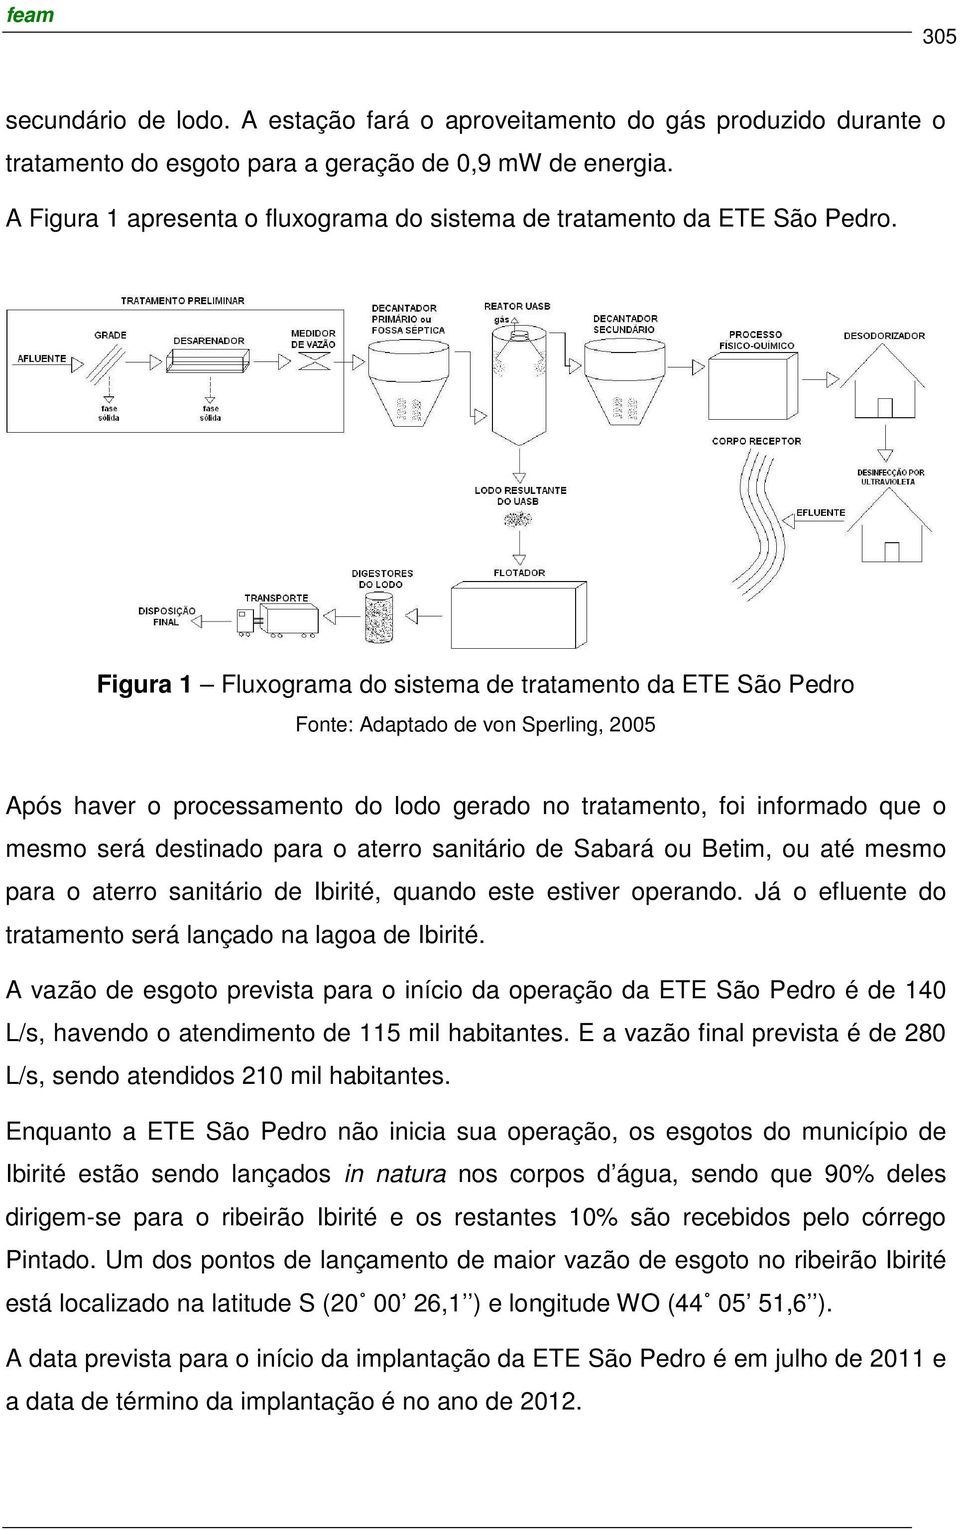 Figura 1 Fluxograma do sistema de tratamento da ETE São Pedro Fonte: Adaptado de von Sperling, 2005 Após haver o processamento do lodo gerado no tratamento, foi informado que o mesmo será destinado